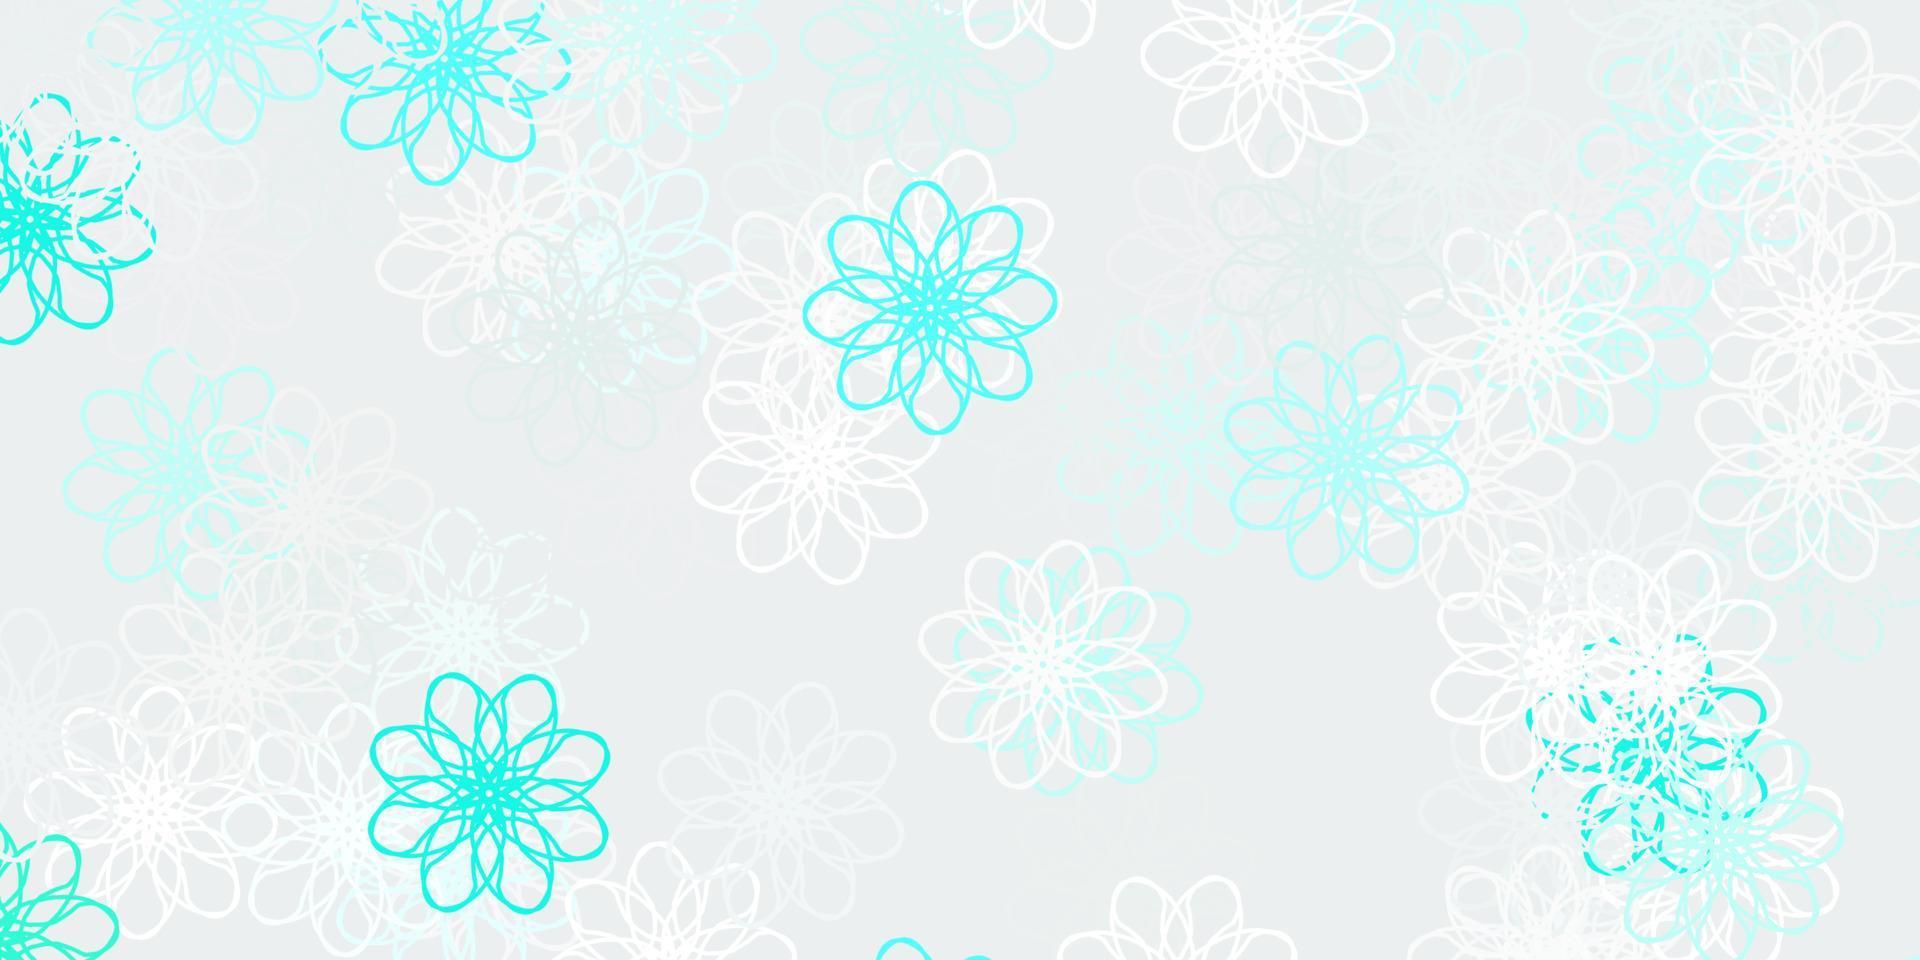 modelo de doodle de vetor verde claro com flores.